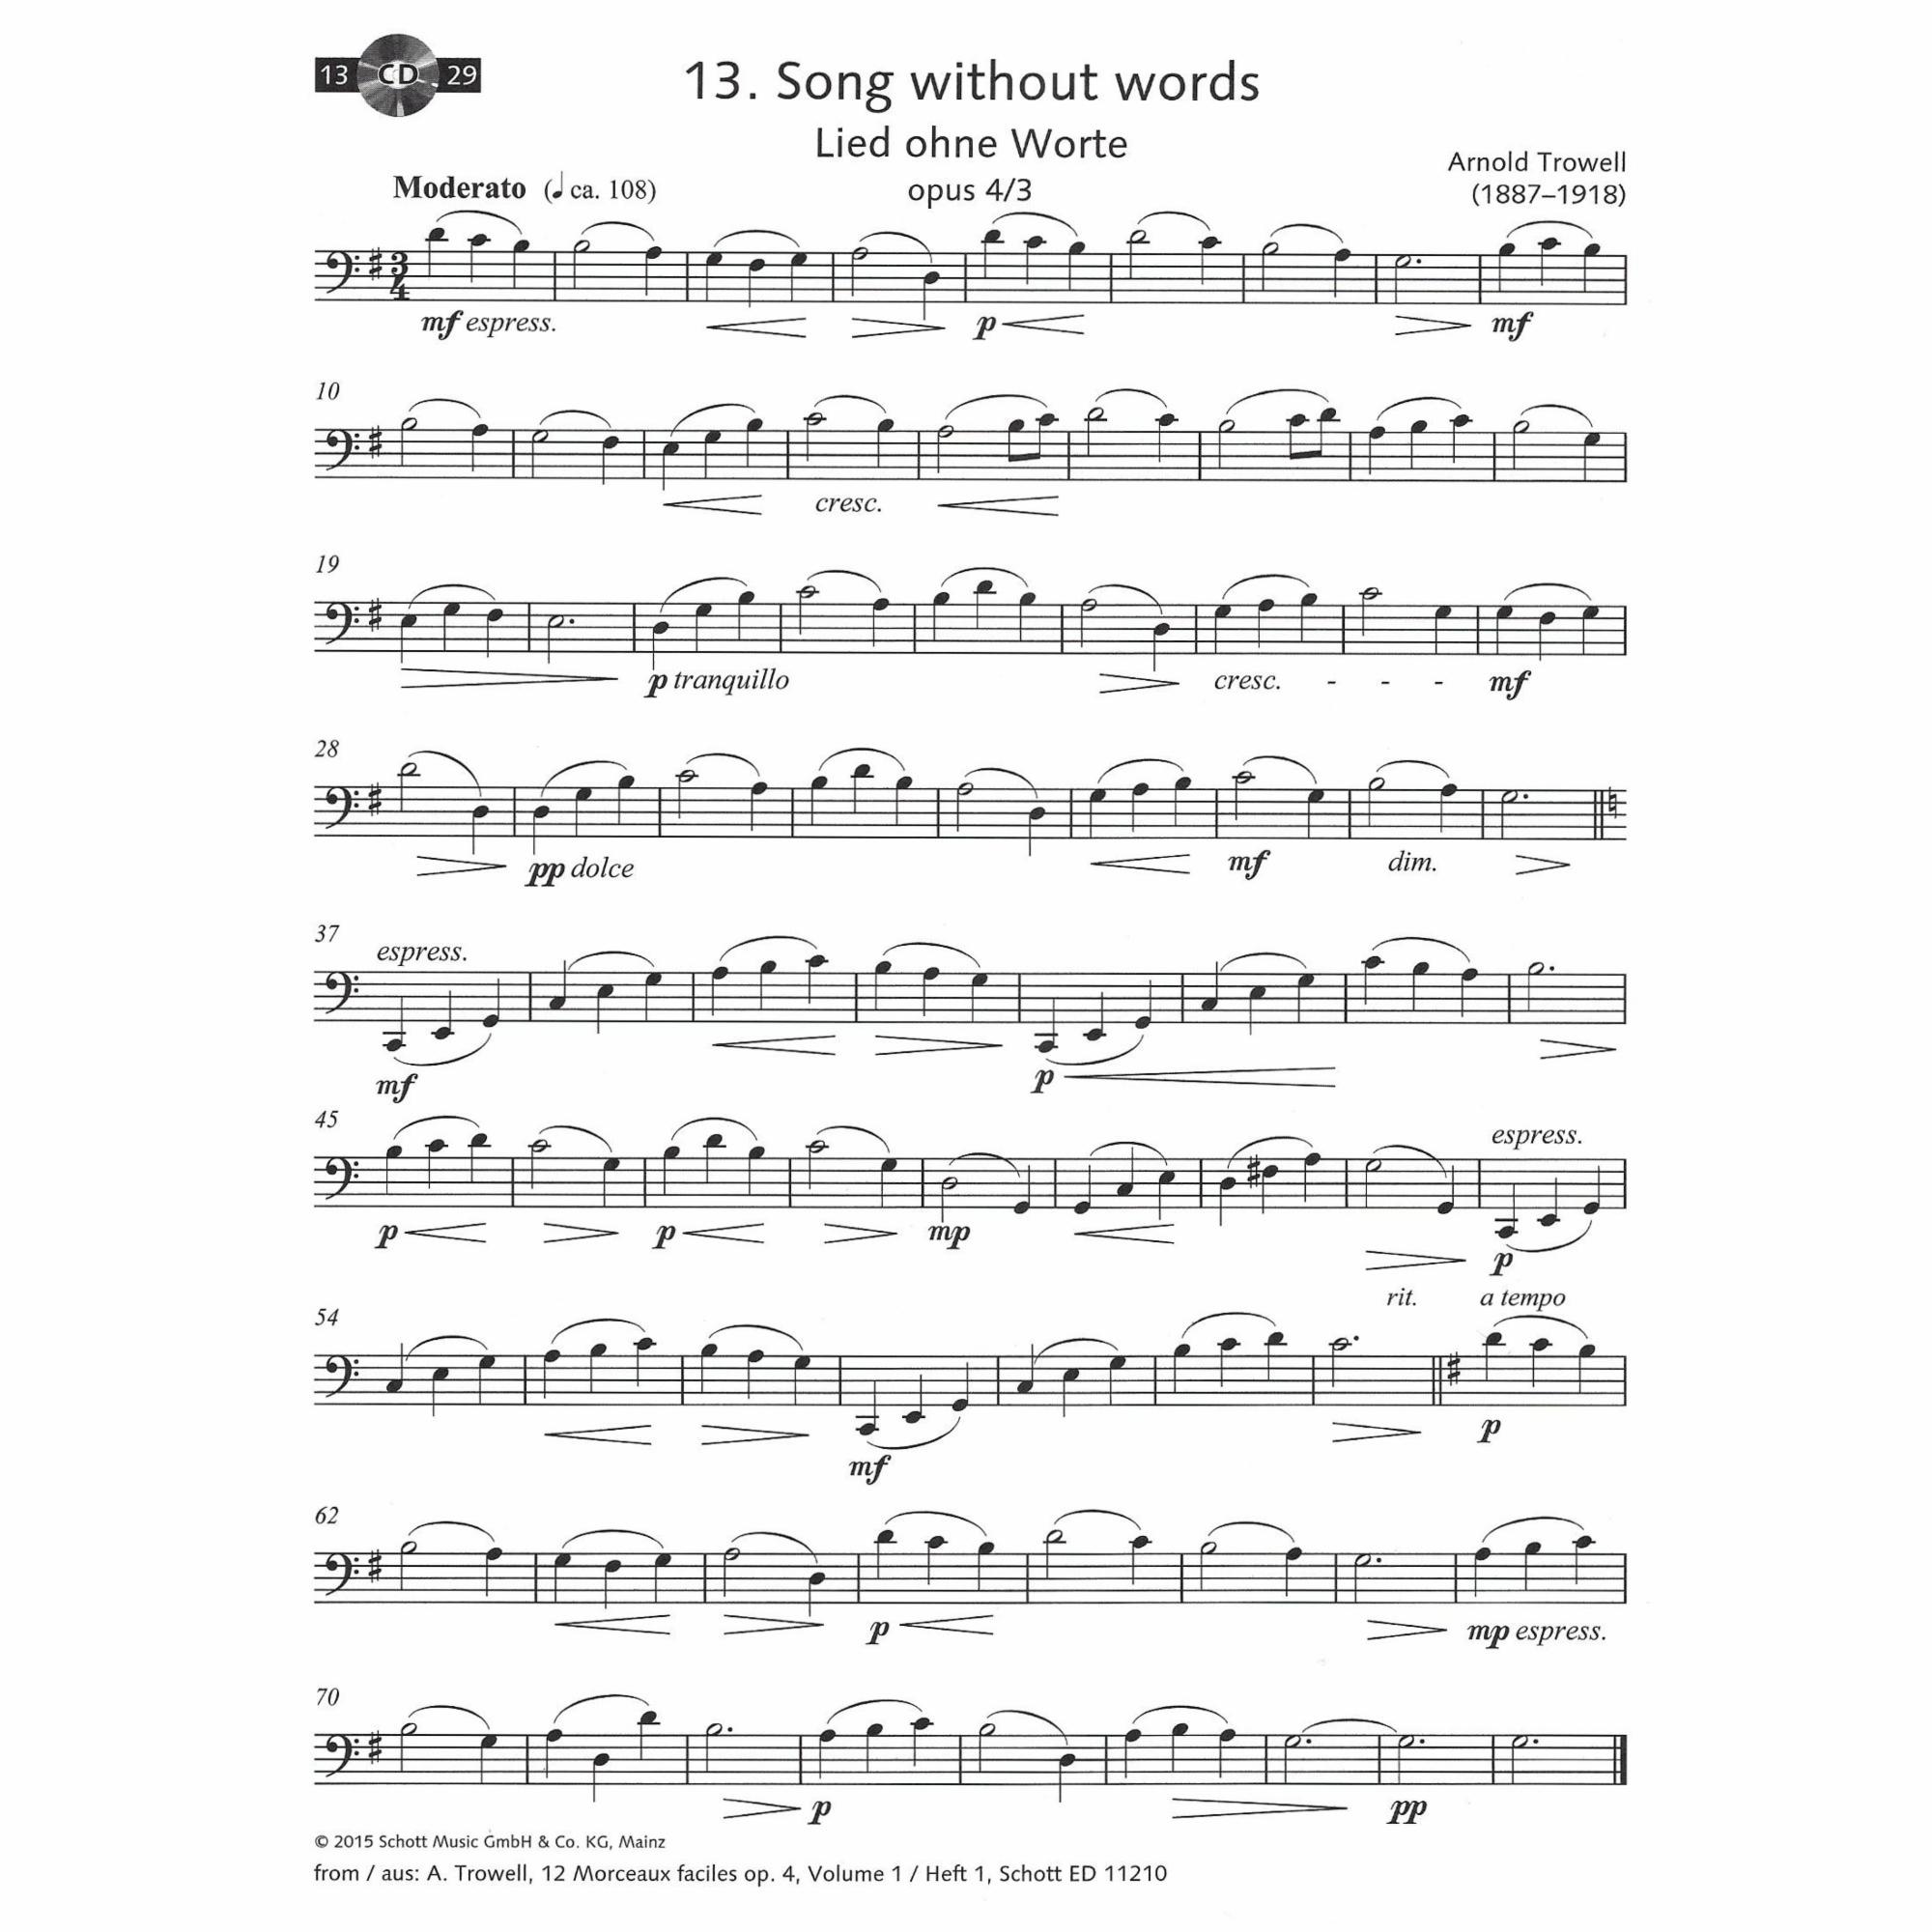 Sample: Vol. 1, Cello (Pg. 12)